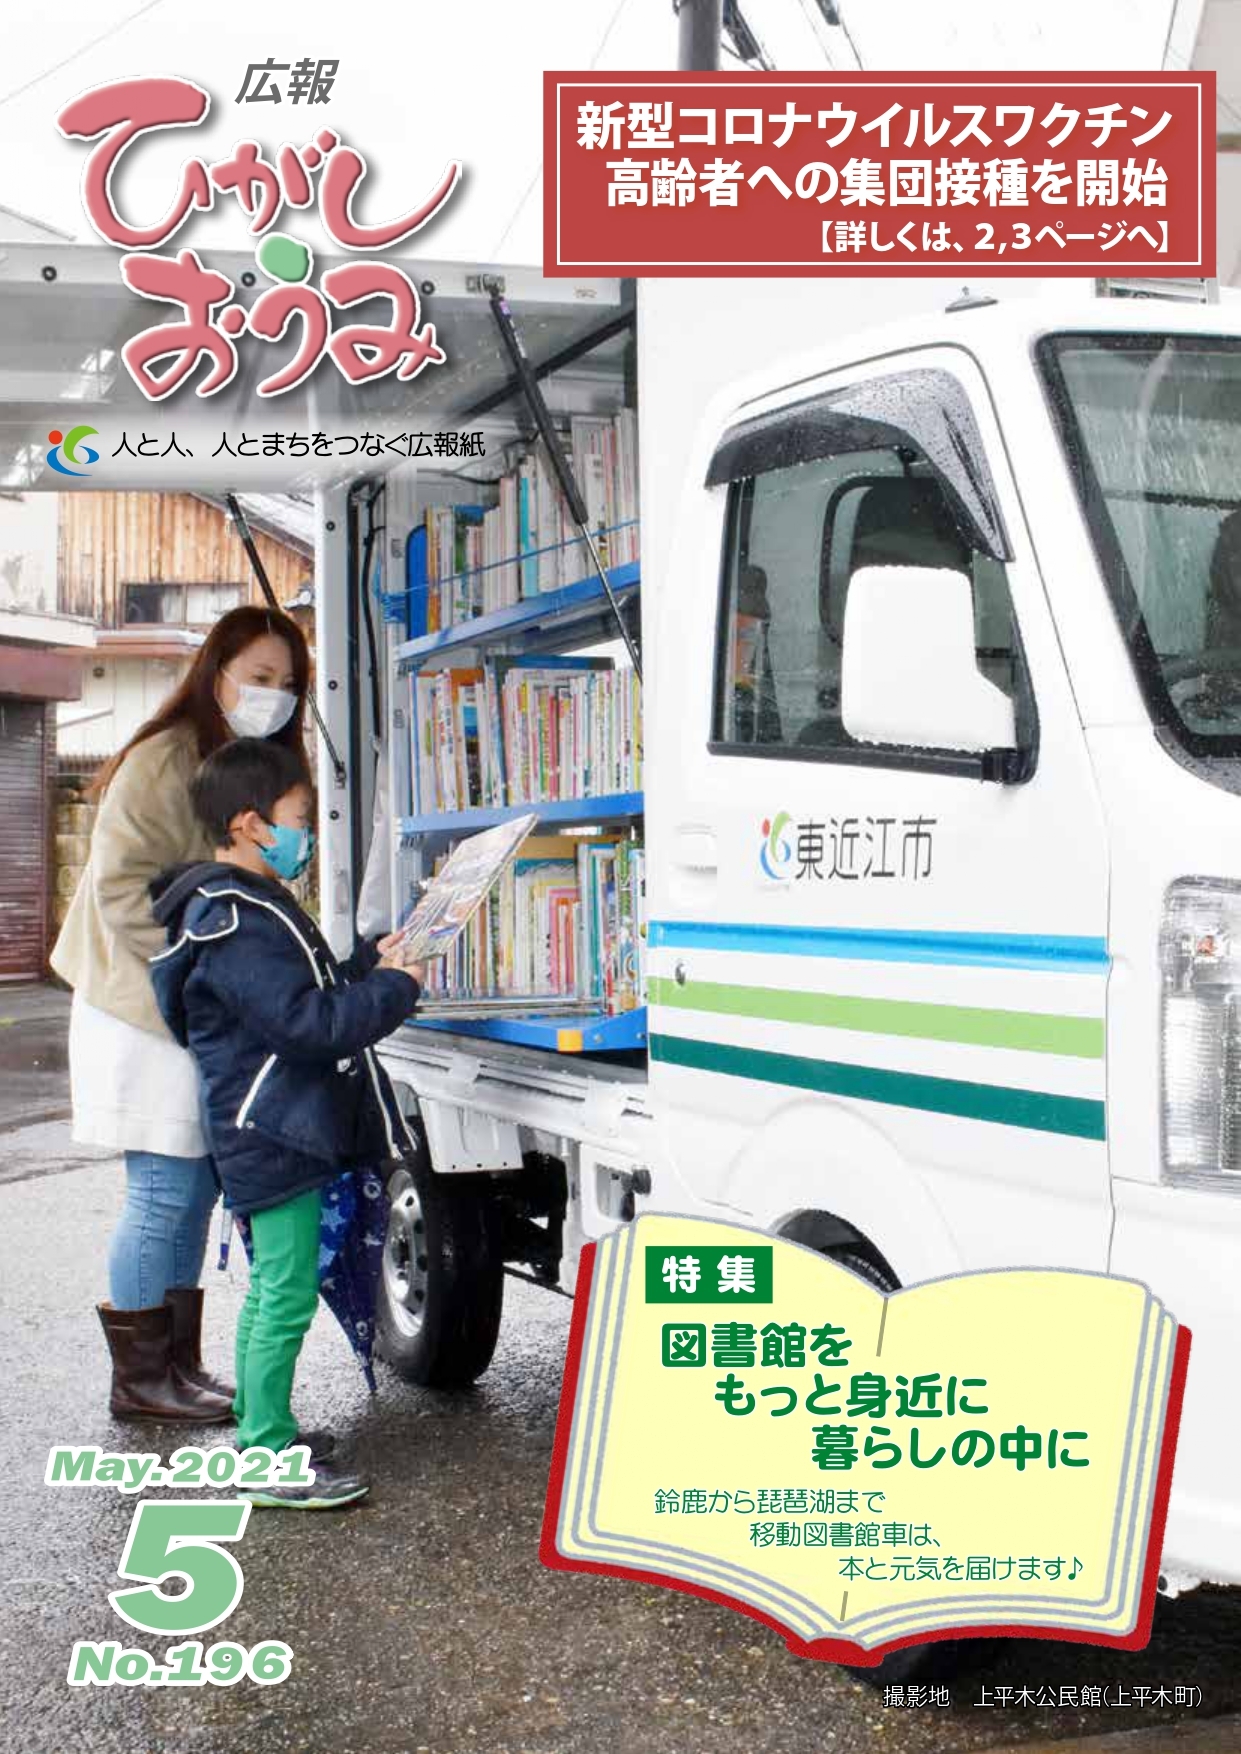 広報ひがしおうみ5月号の表紙。写真は上平木公民館で新しい移動図書館車を利用する親子の様子です。